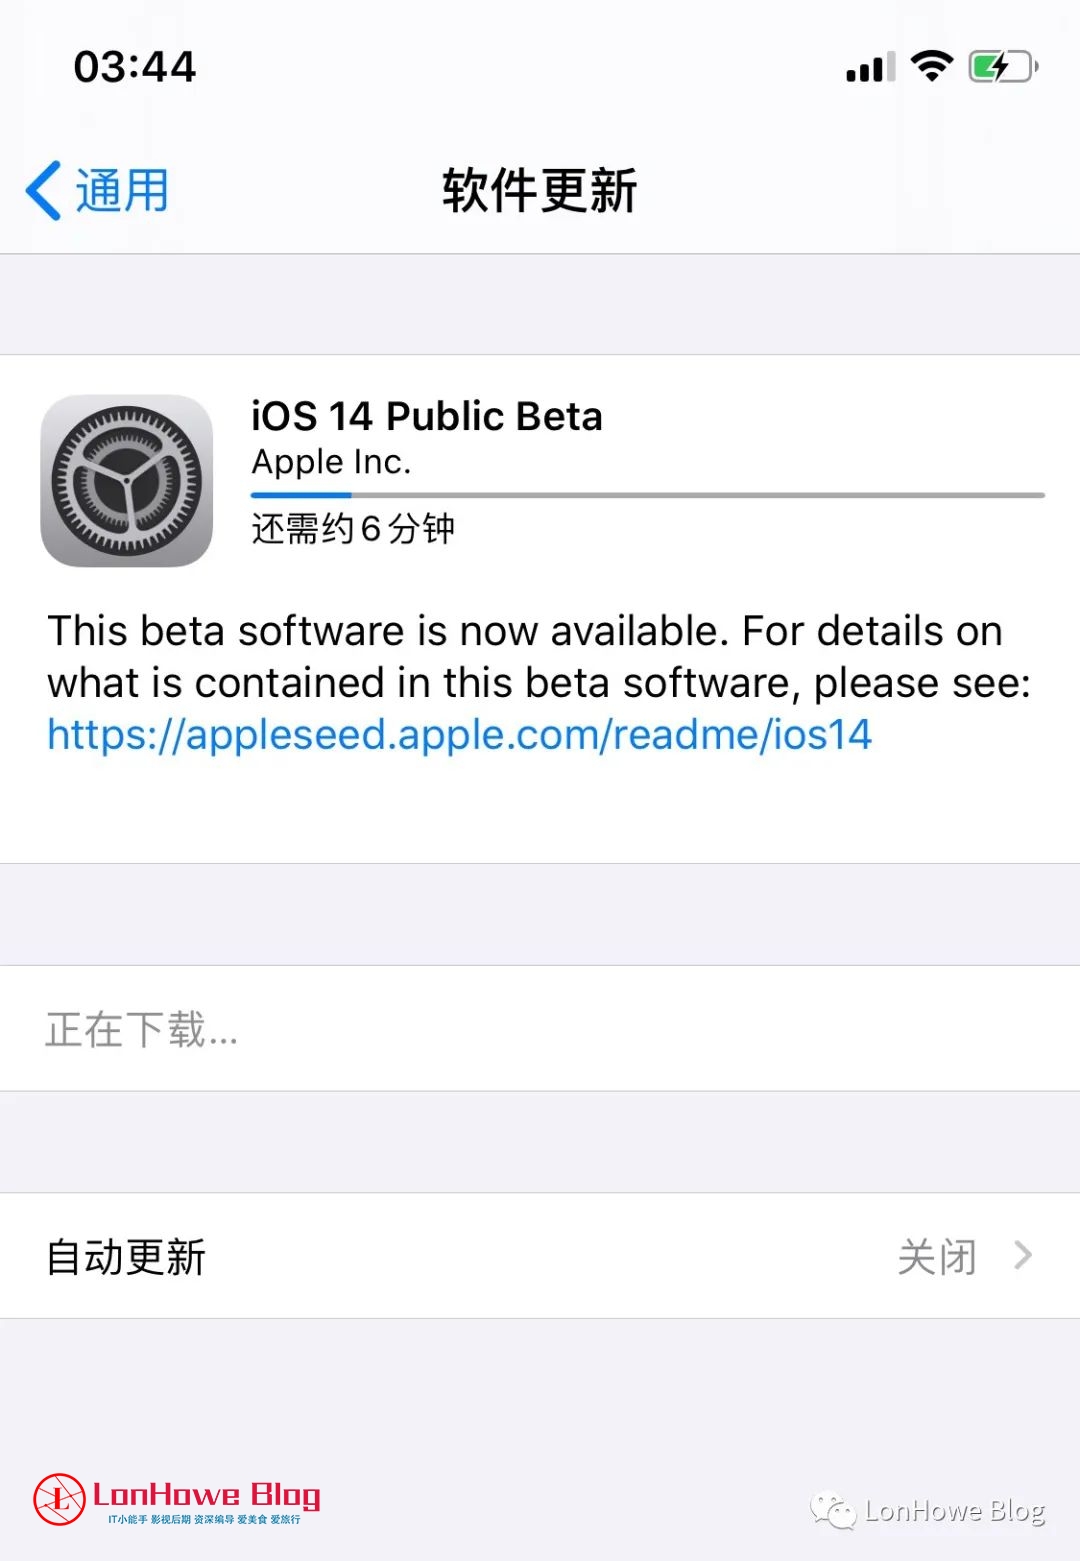 全新的iOS14/iPadOS14/WatchOS7正式发布！-LonHowe Blog